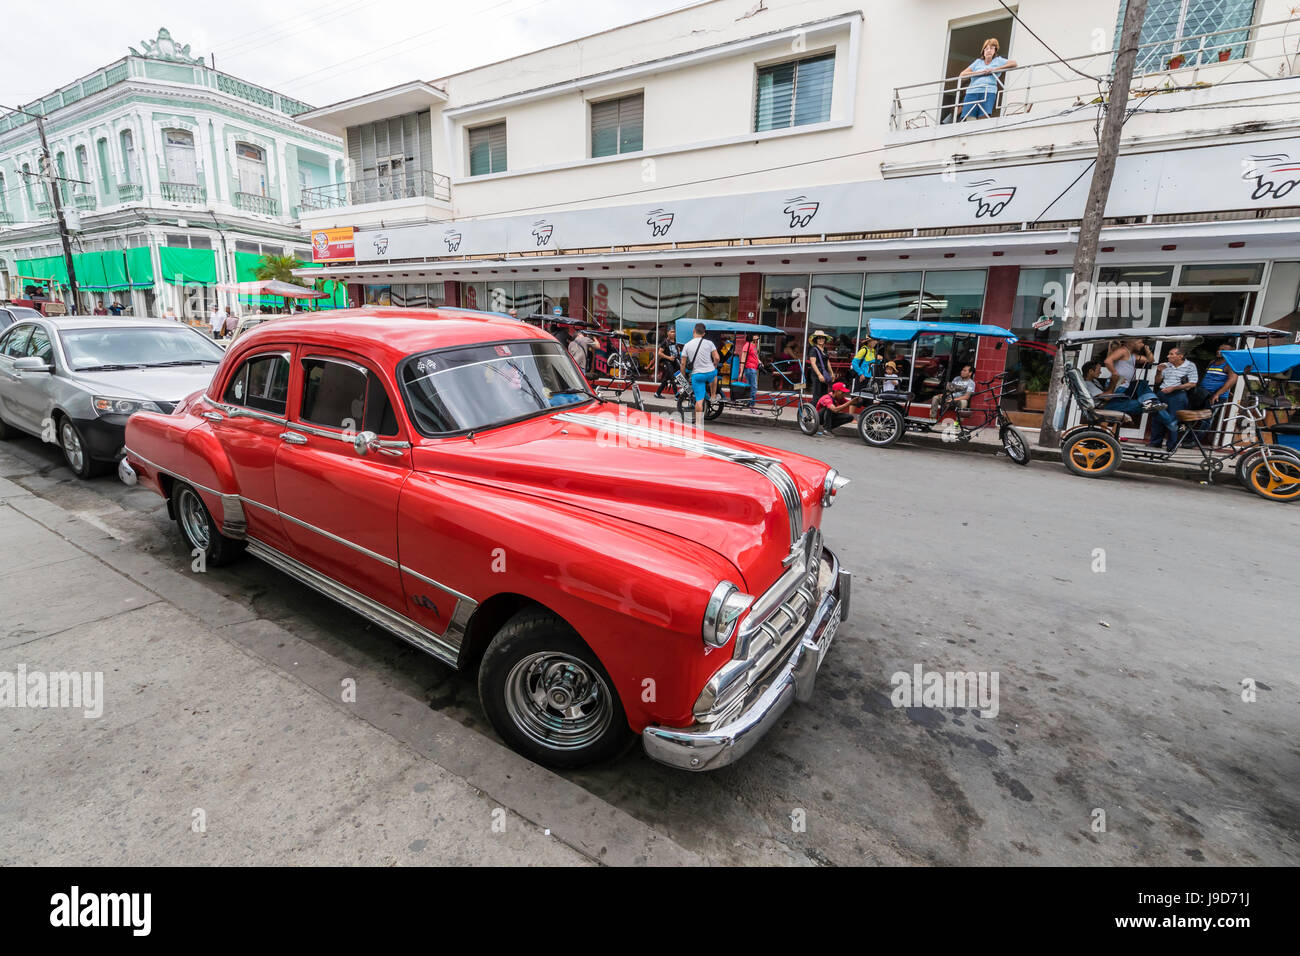 Taxi Pontiac classique des années 1950, connu localement comme almendrones dans la ville de Cienfuegos, Cuba, Antilles, Caraïbes Banque D'Images